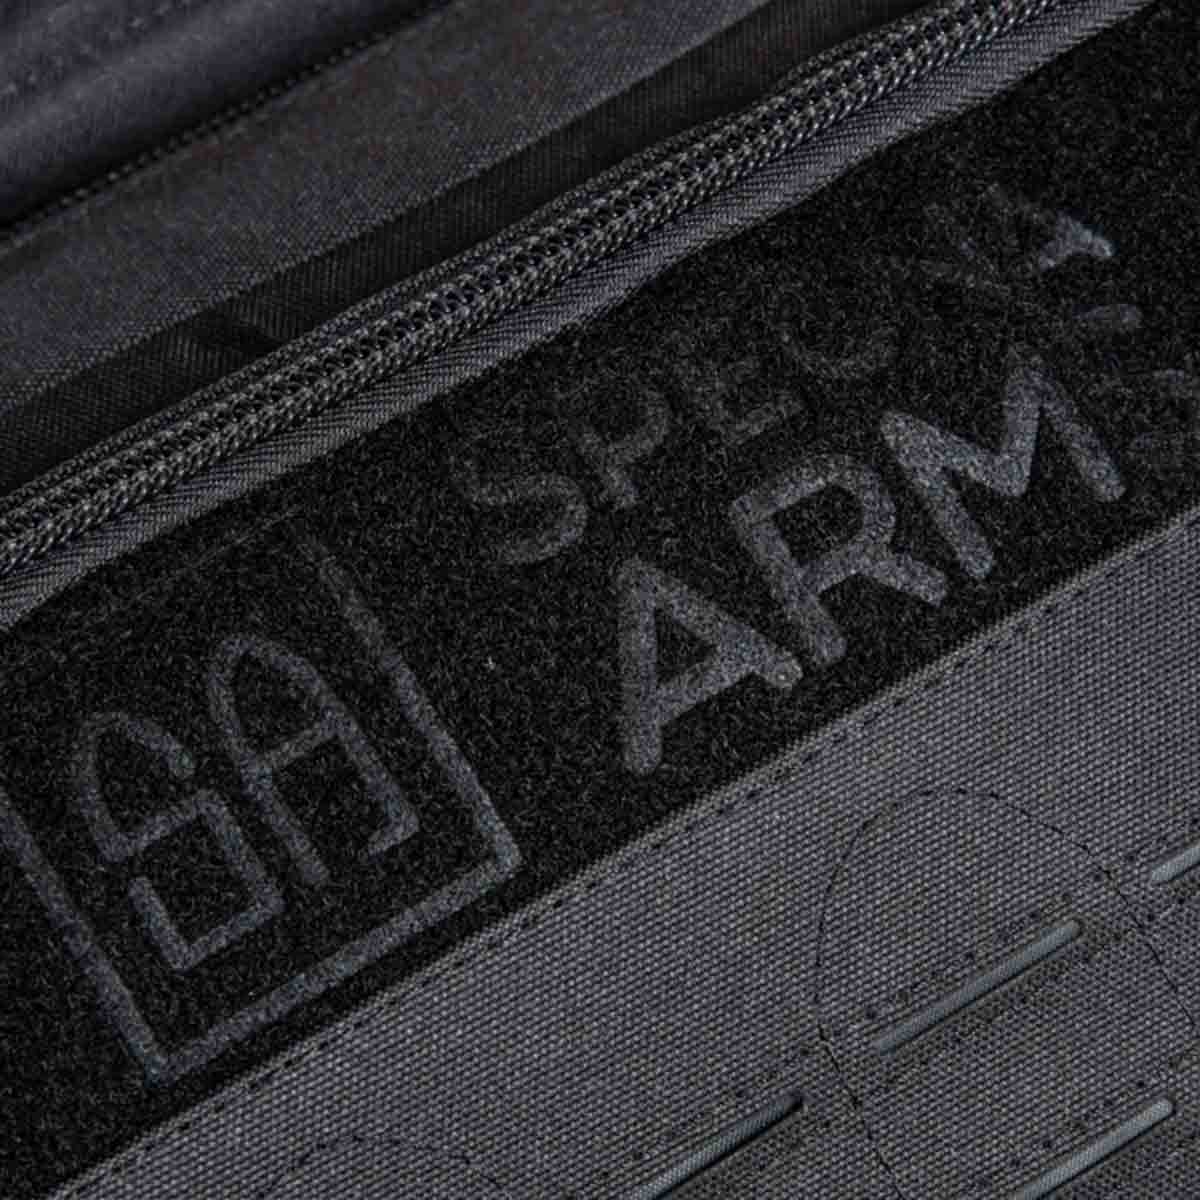 Pokrowiec na repliki ASG Specna Arms GunBag V5 - Black